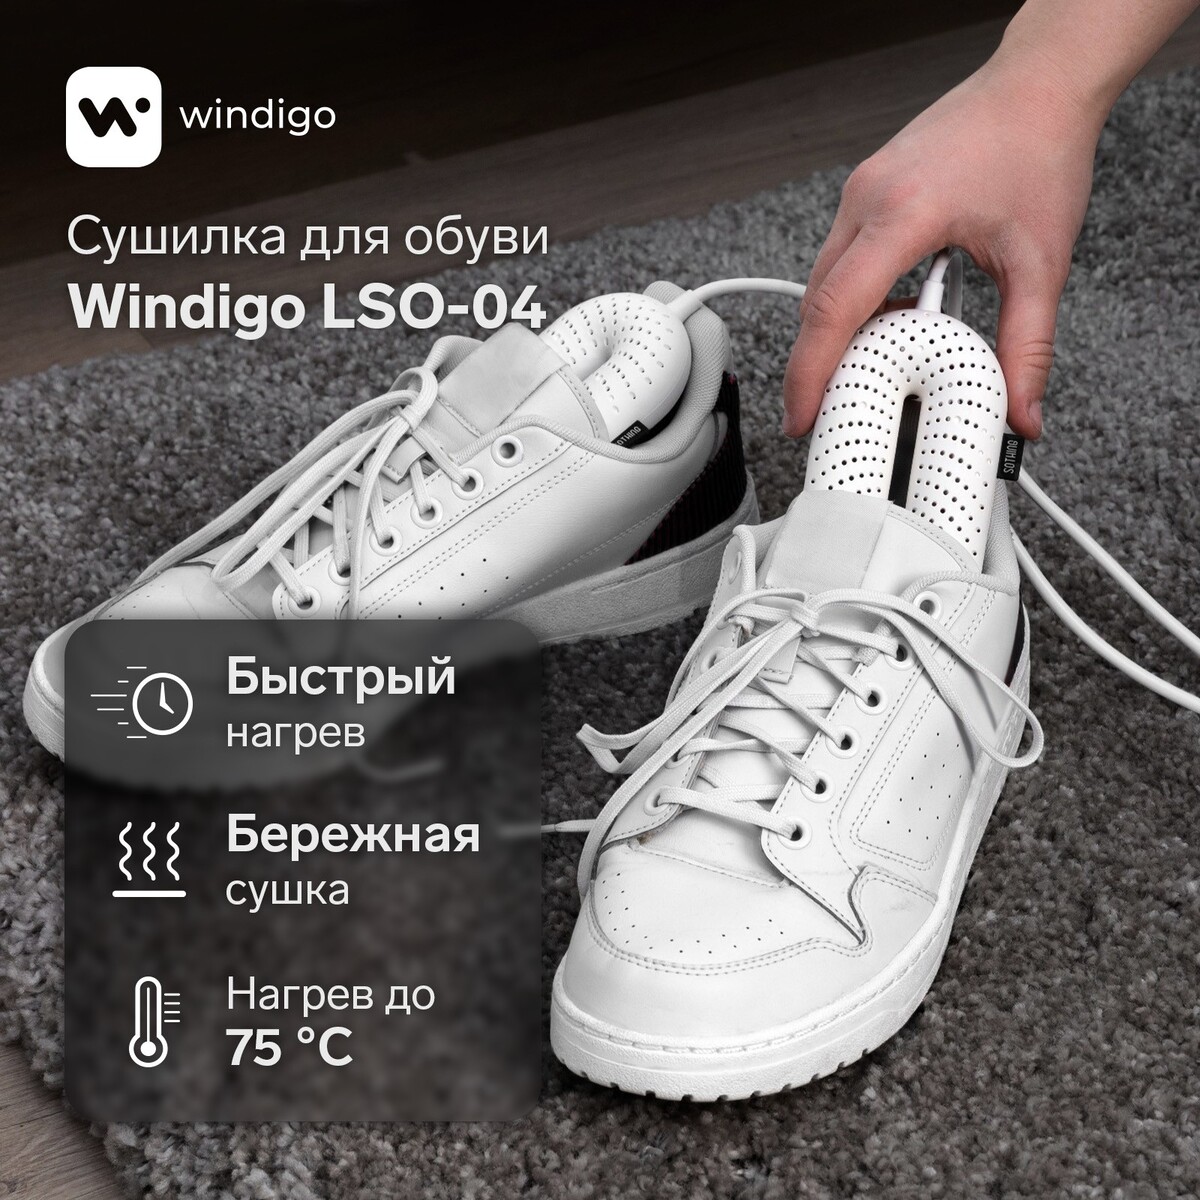 Сушилка для обуви windigo lso-04, 17 см, 20 вт, индикатор, белая сушилка для обуви эсо 9 220 9 вт 14 см синяя